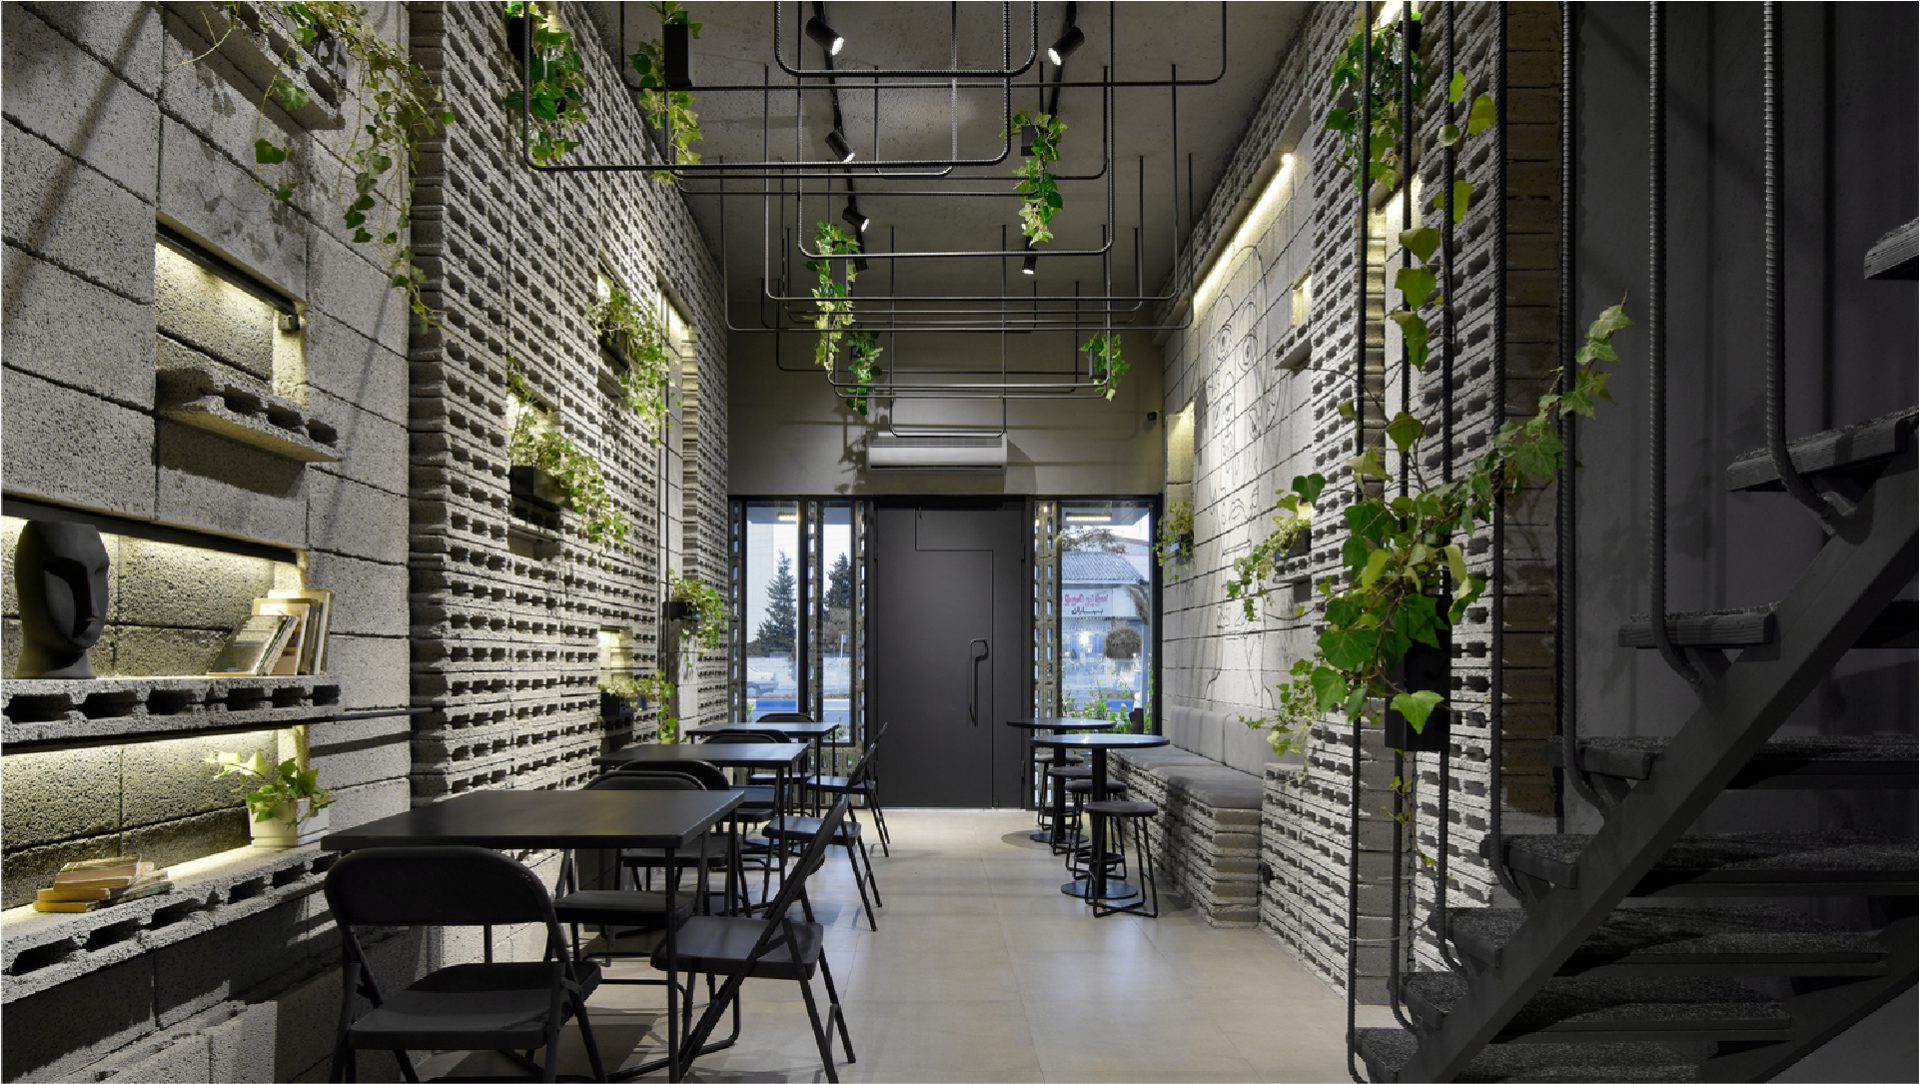 futuristic interior design cafe